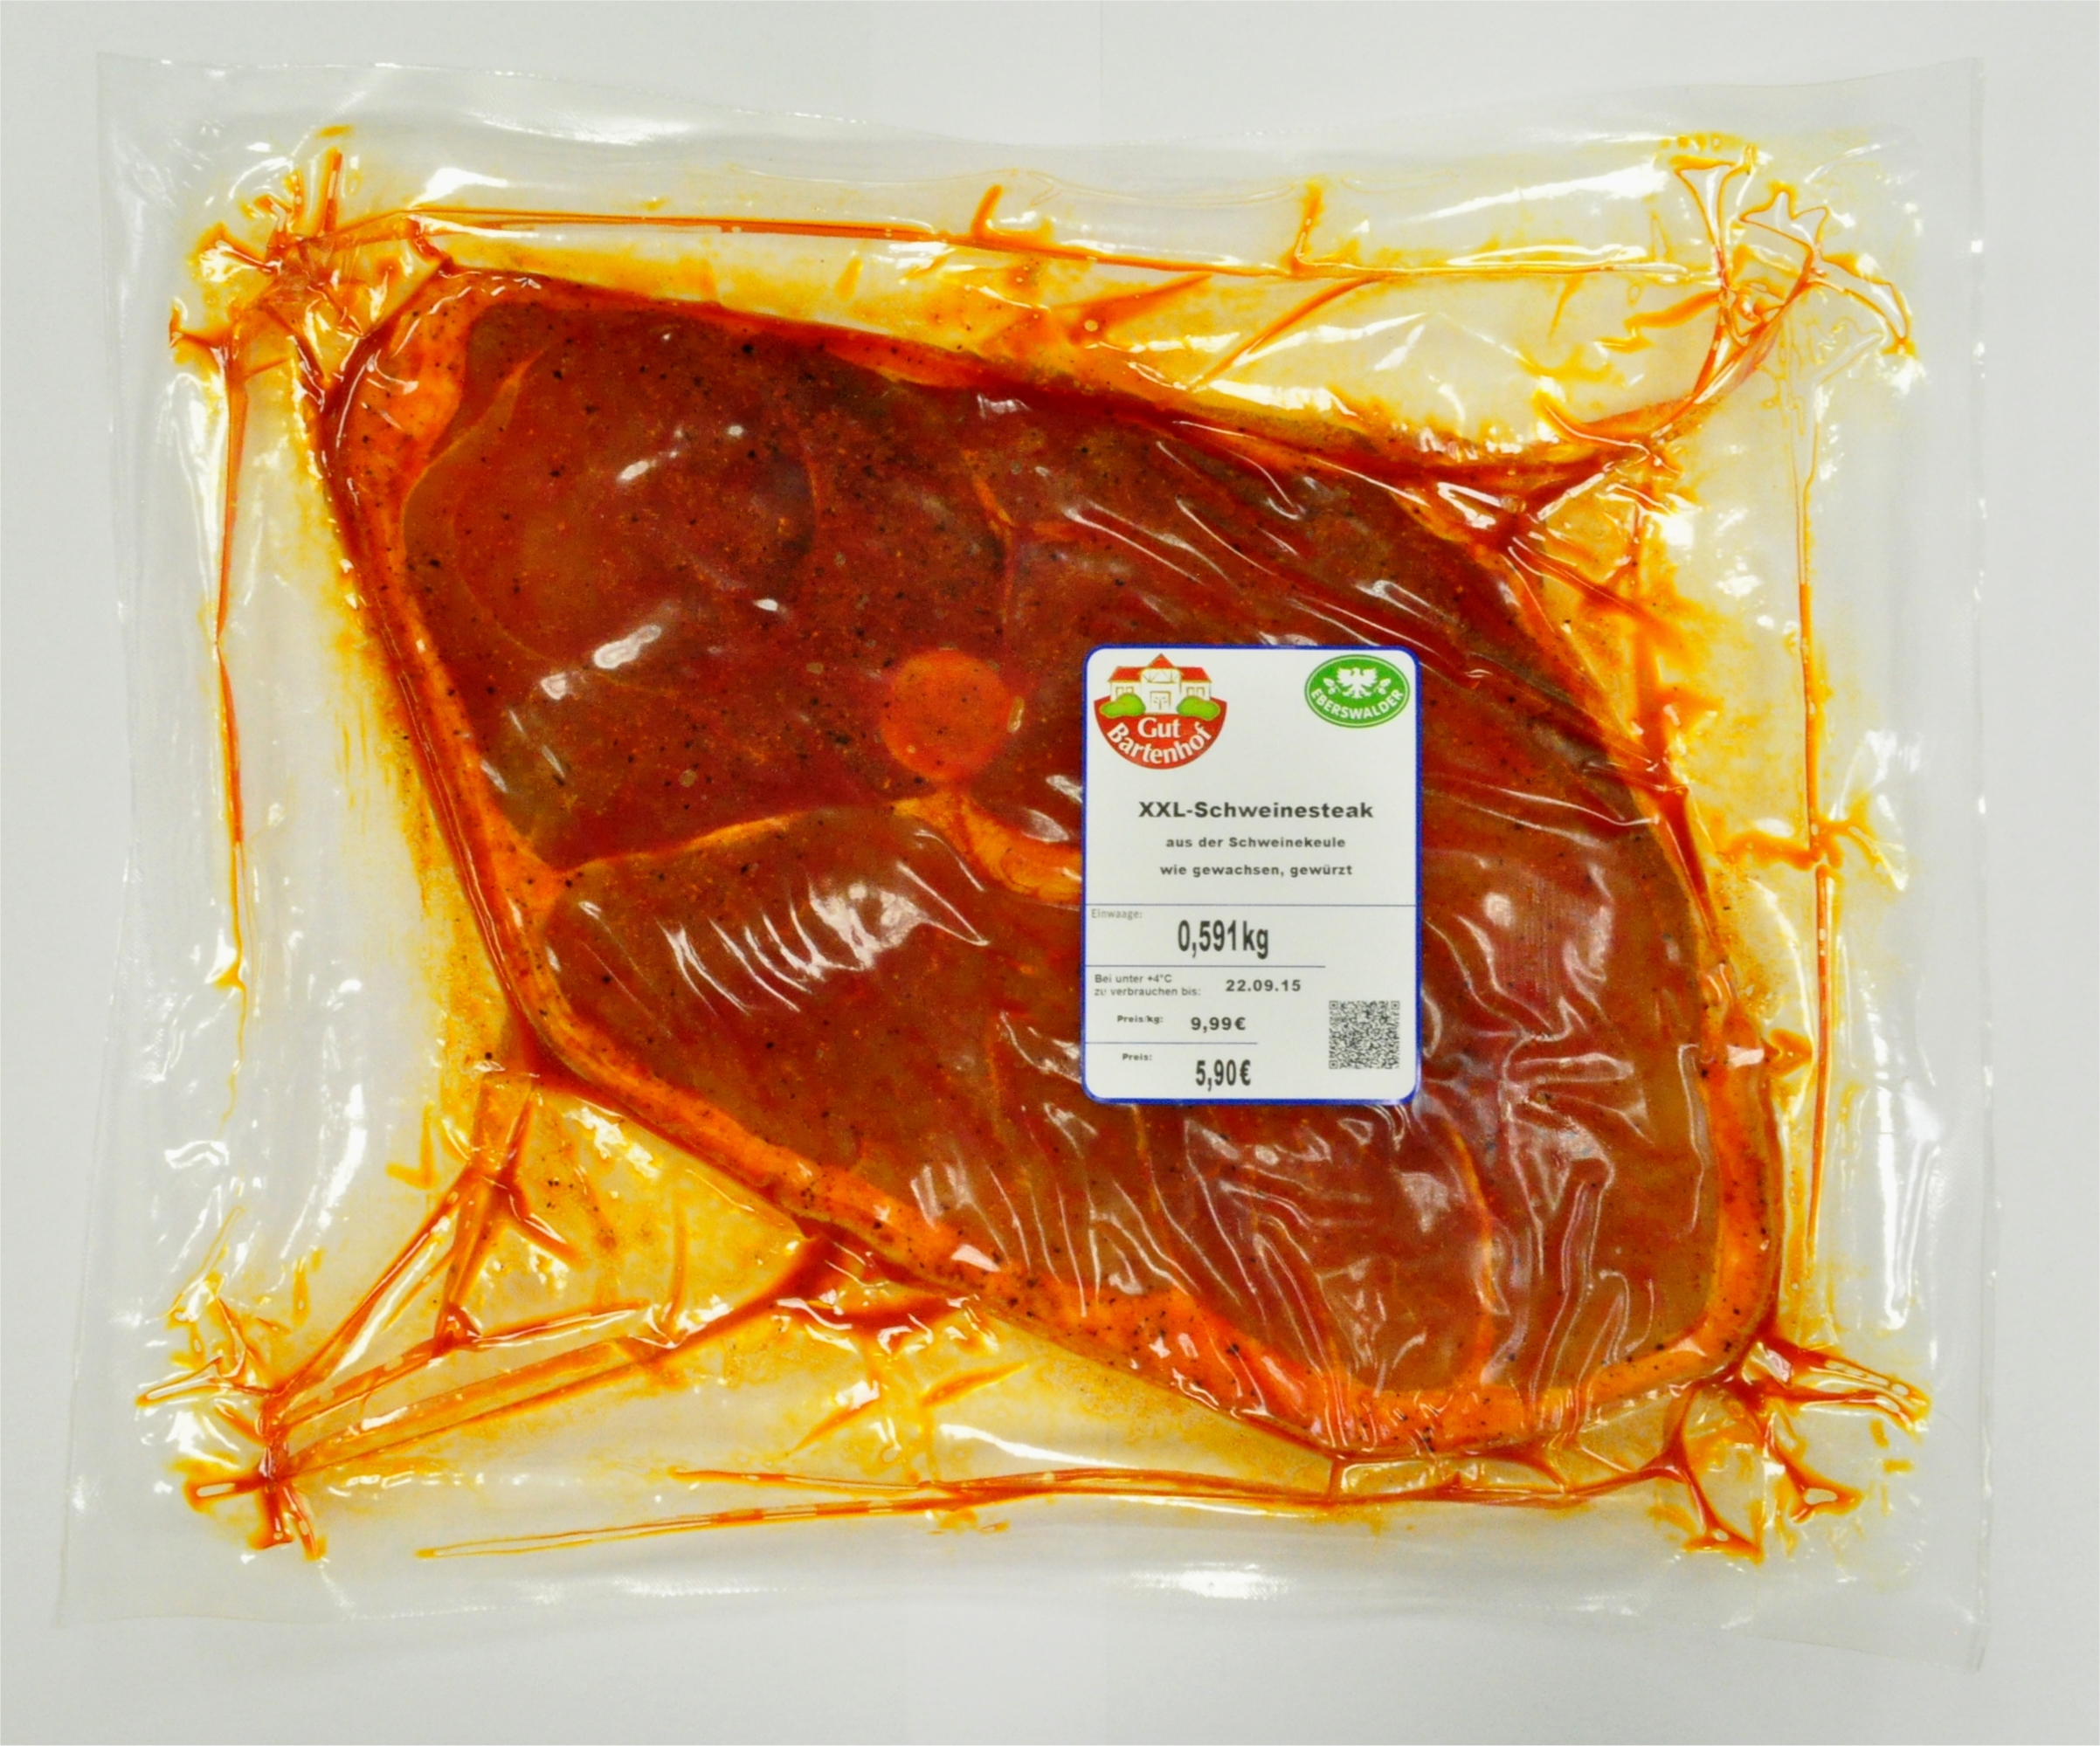 Getränke Wurst XXL-Schweinesteak verarbeitet Fleisch und Gramm) GmbH Geflügel verarbeitet Schwein / (ca. Lebensmittel / Fleisch Geflügel Tabakwaren Eberswalder - EFG / 900 mynetfair · - Fleisch /